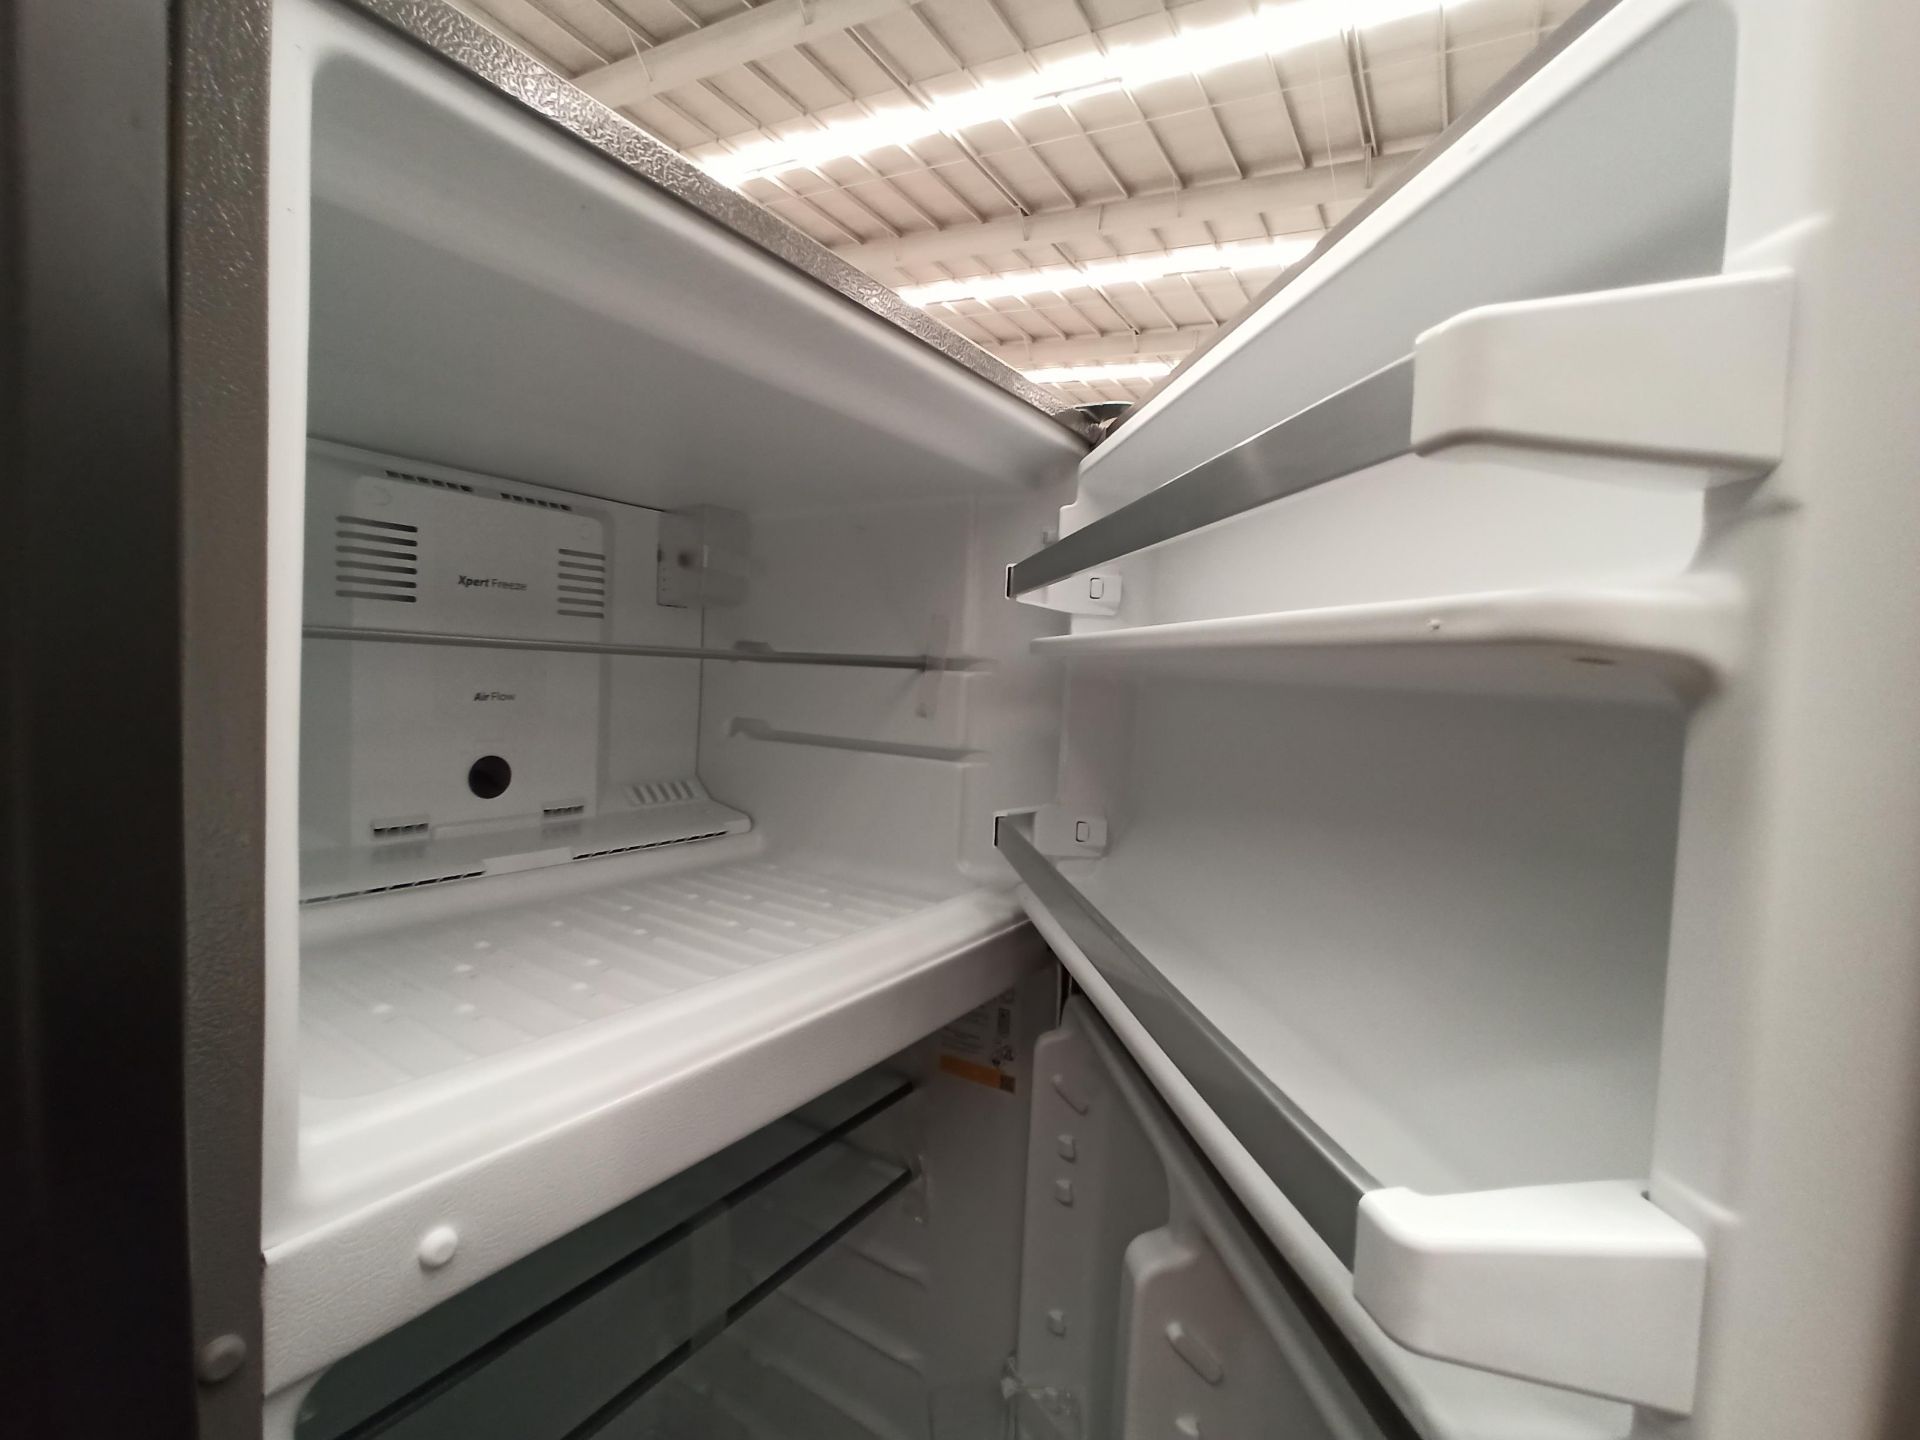 Lote de 2 refrigeradores contiene: 1 Refrigerador Marca WHIRLPOOL, Modelo WT1818A, Serie 878989, Co - Image 3 of 16